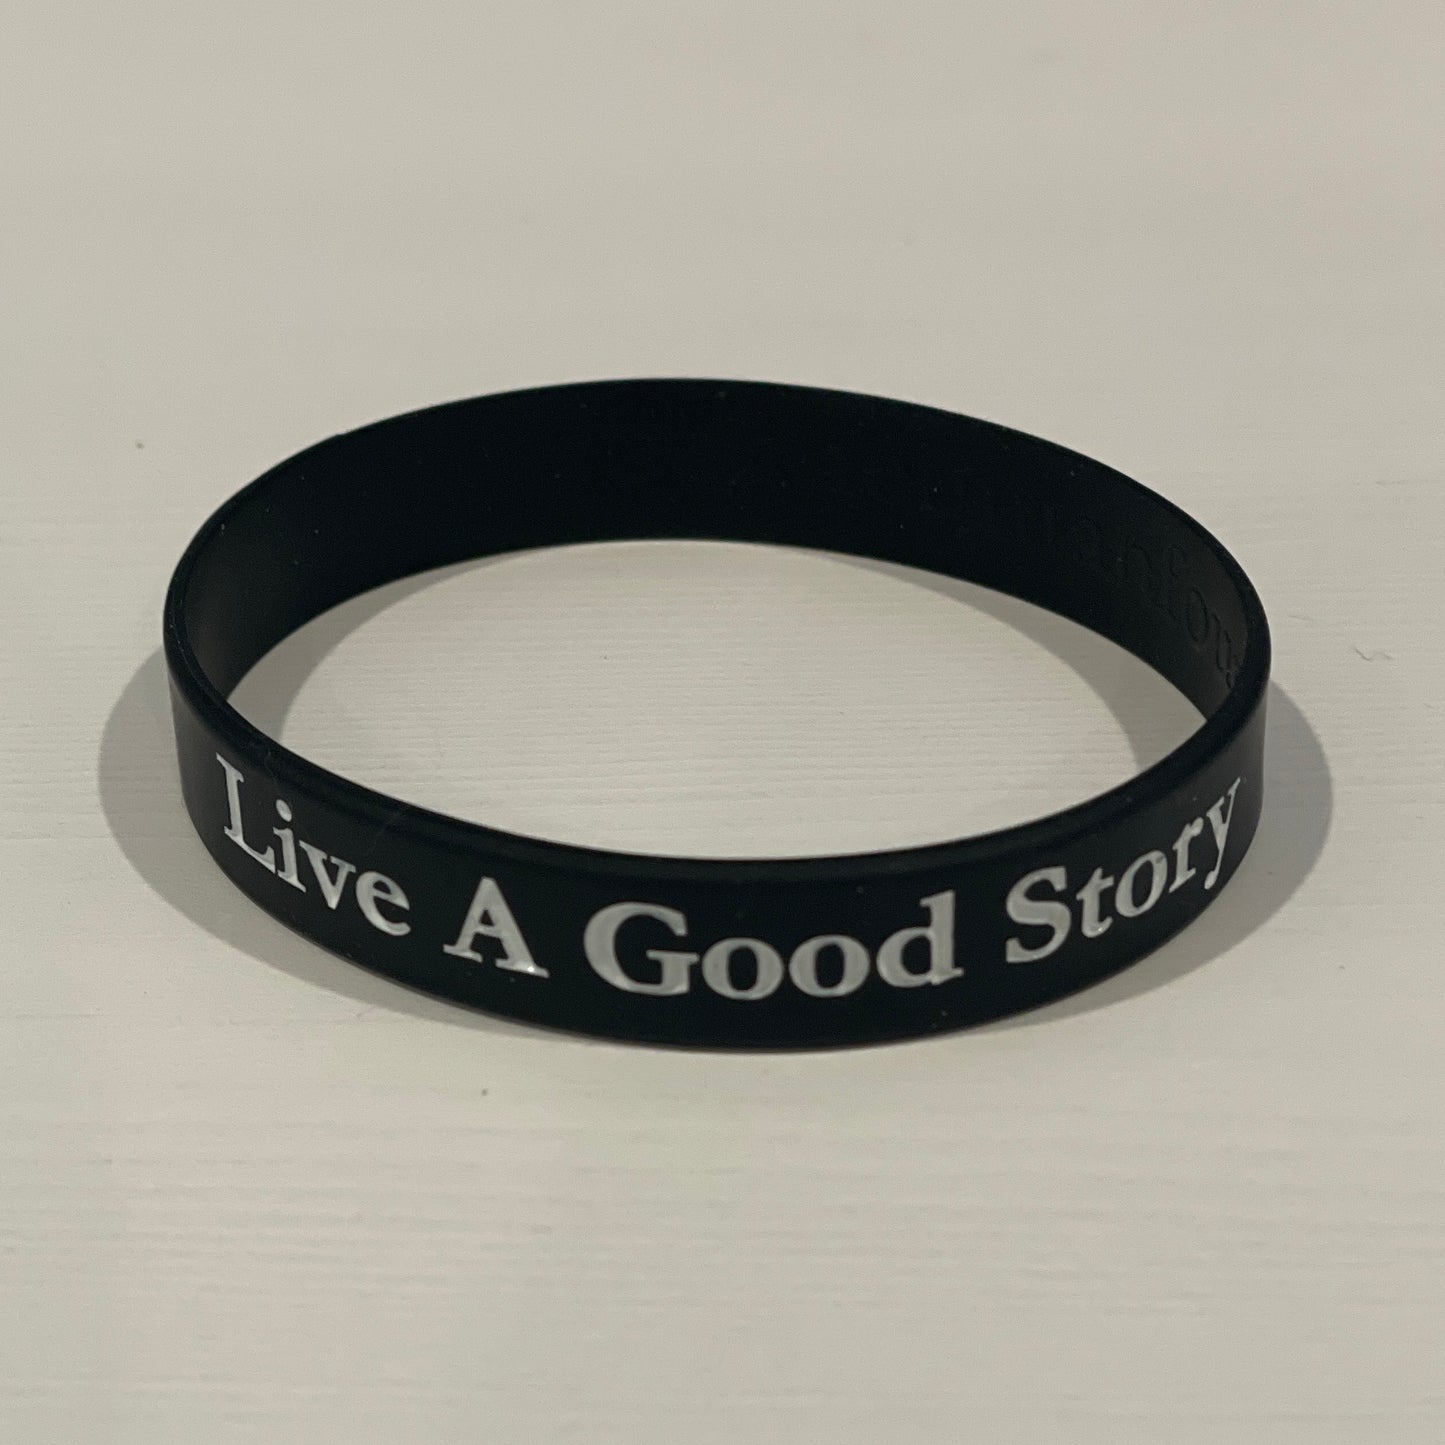 live a good story wristband